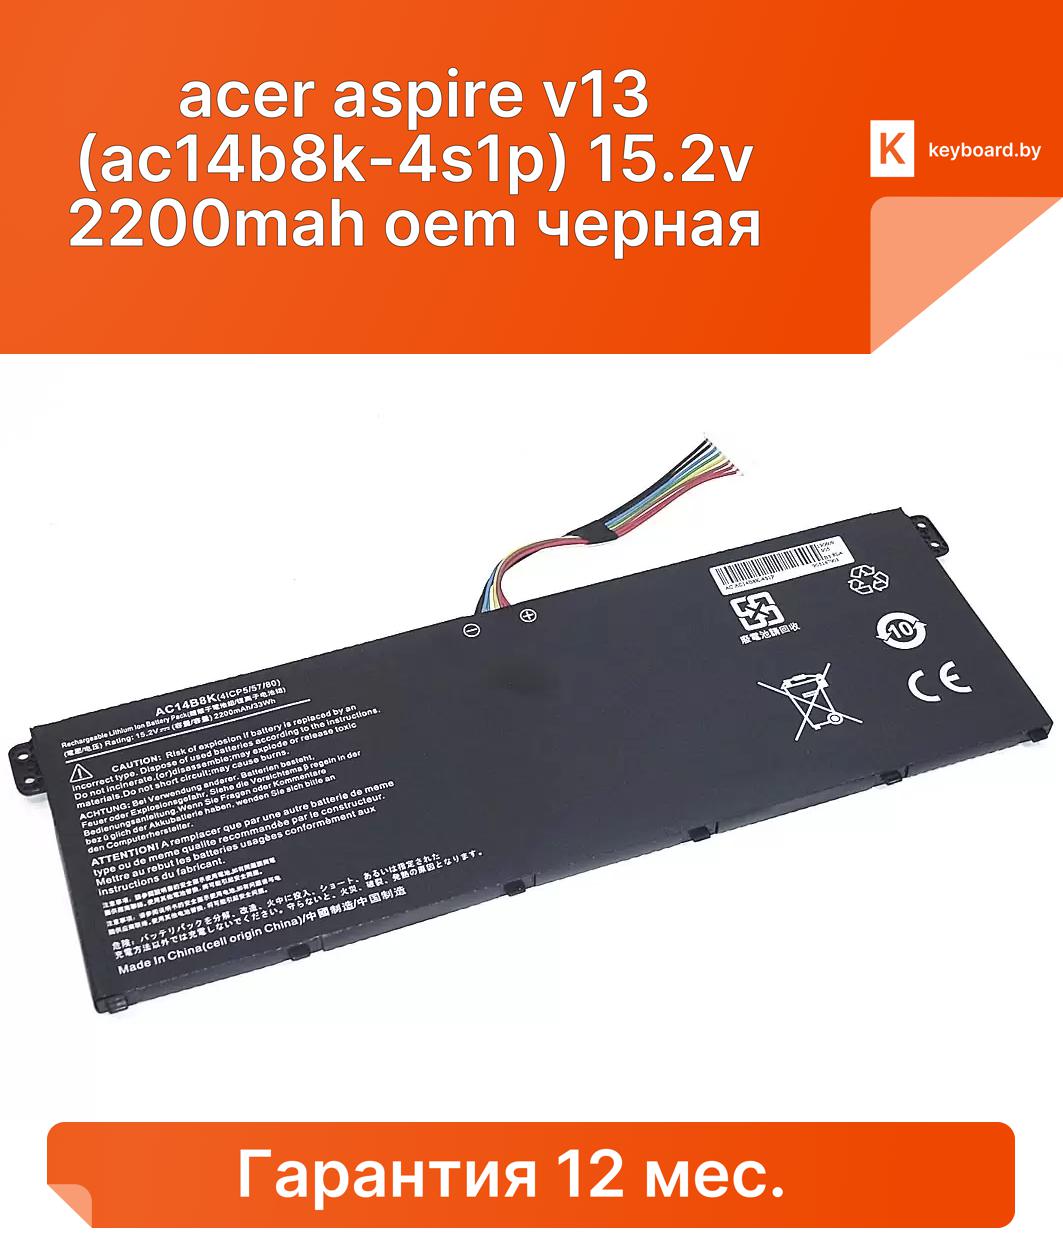 Аккумуляторная батарея для ноутбука acer aspire v13 (ac14b8k-4s1p) 15.2v 2200mah oem черная